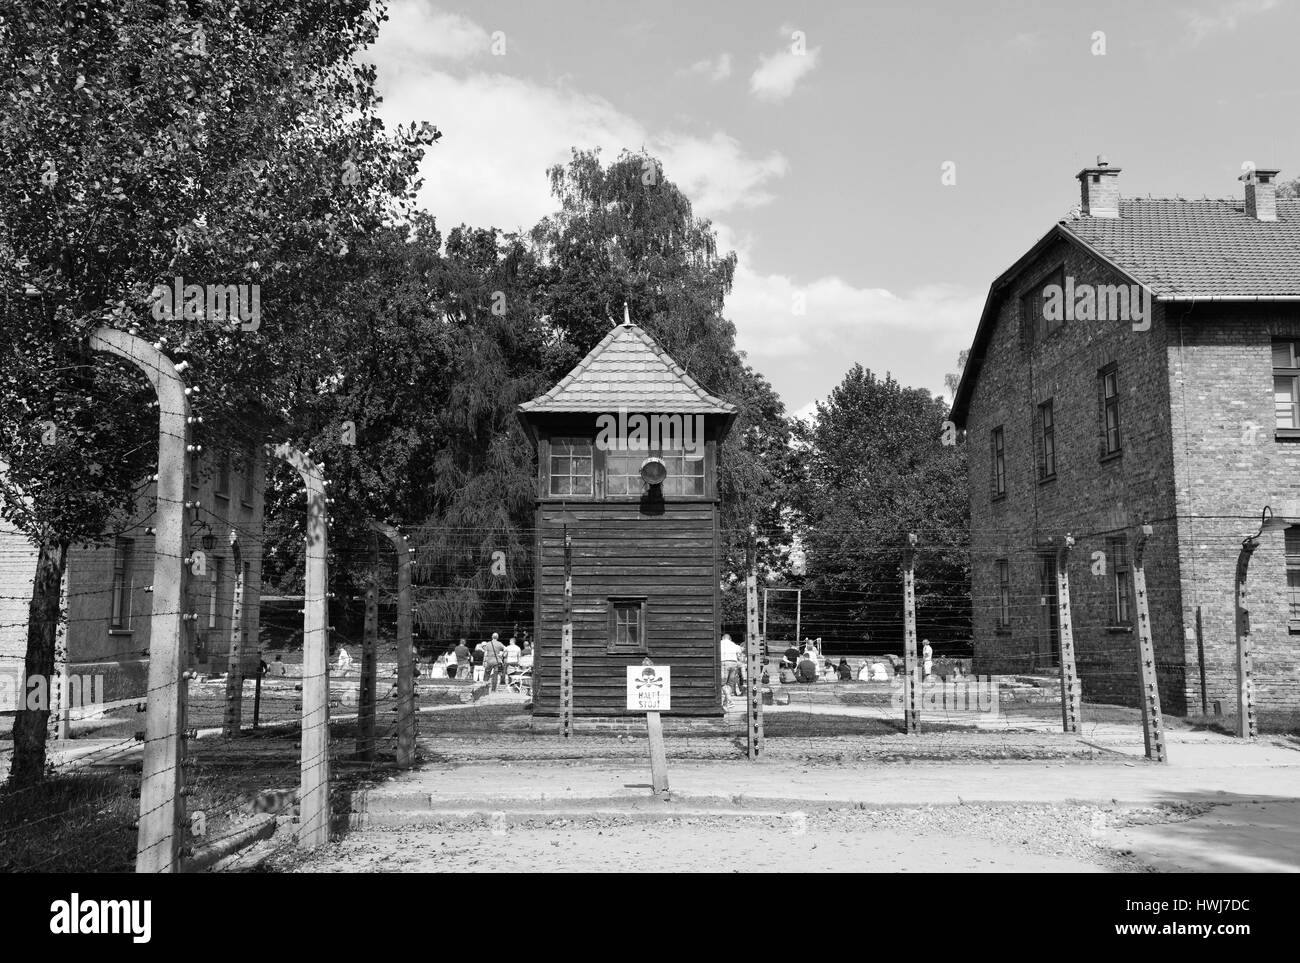 Stacheldraht, Wachturm, Lagergebaeude, Stammlager I, Konzentrationslager, Auschwitz-Birkenau, Auschwitz, Polen Stock Photo